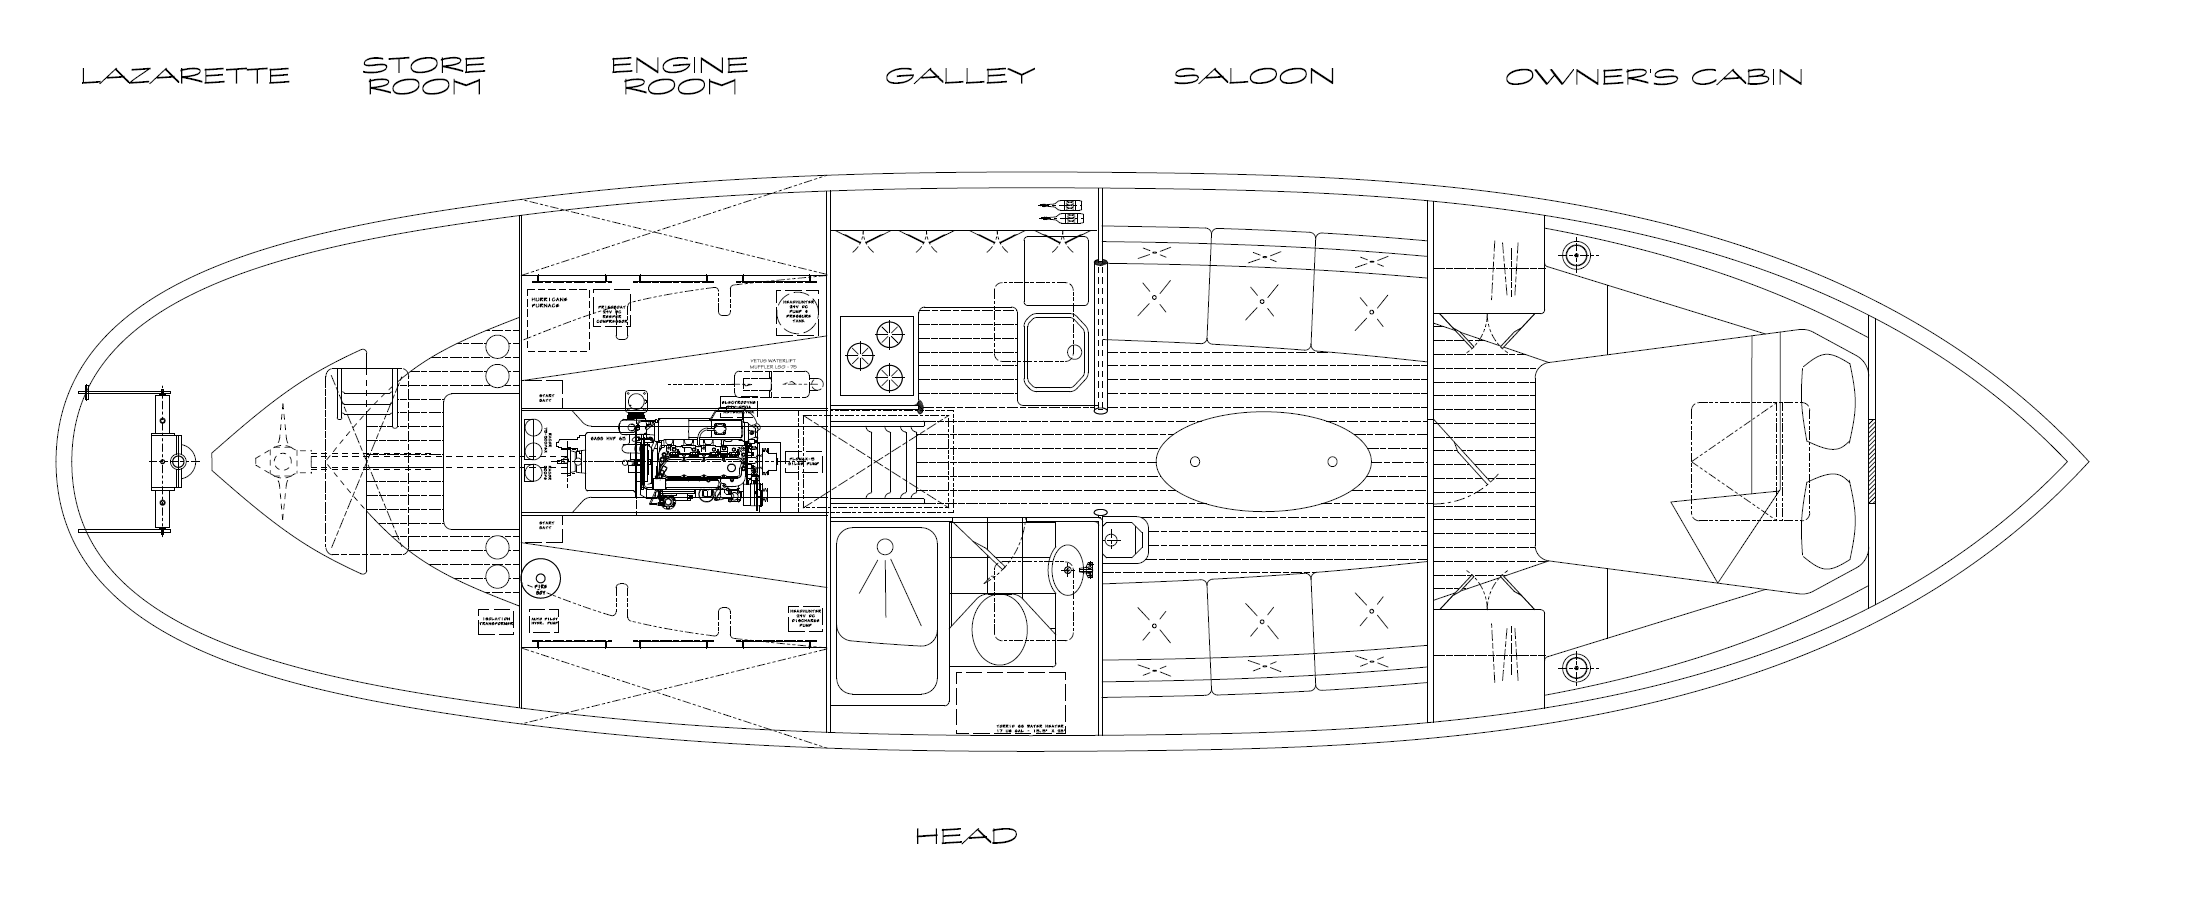 RJ-43 Interior Plan - Kasten Marine Design, Inc.